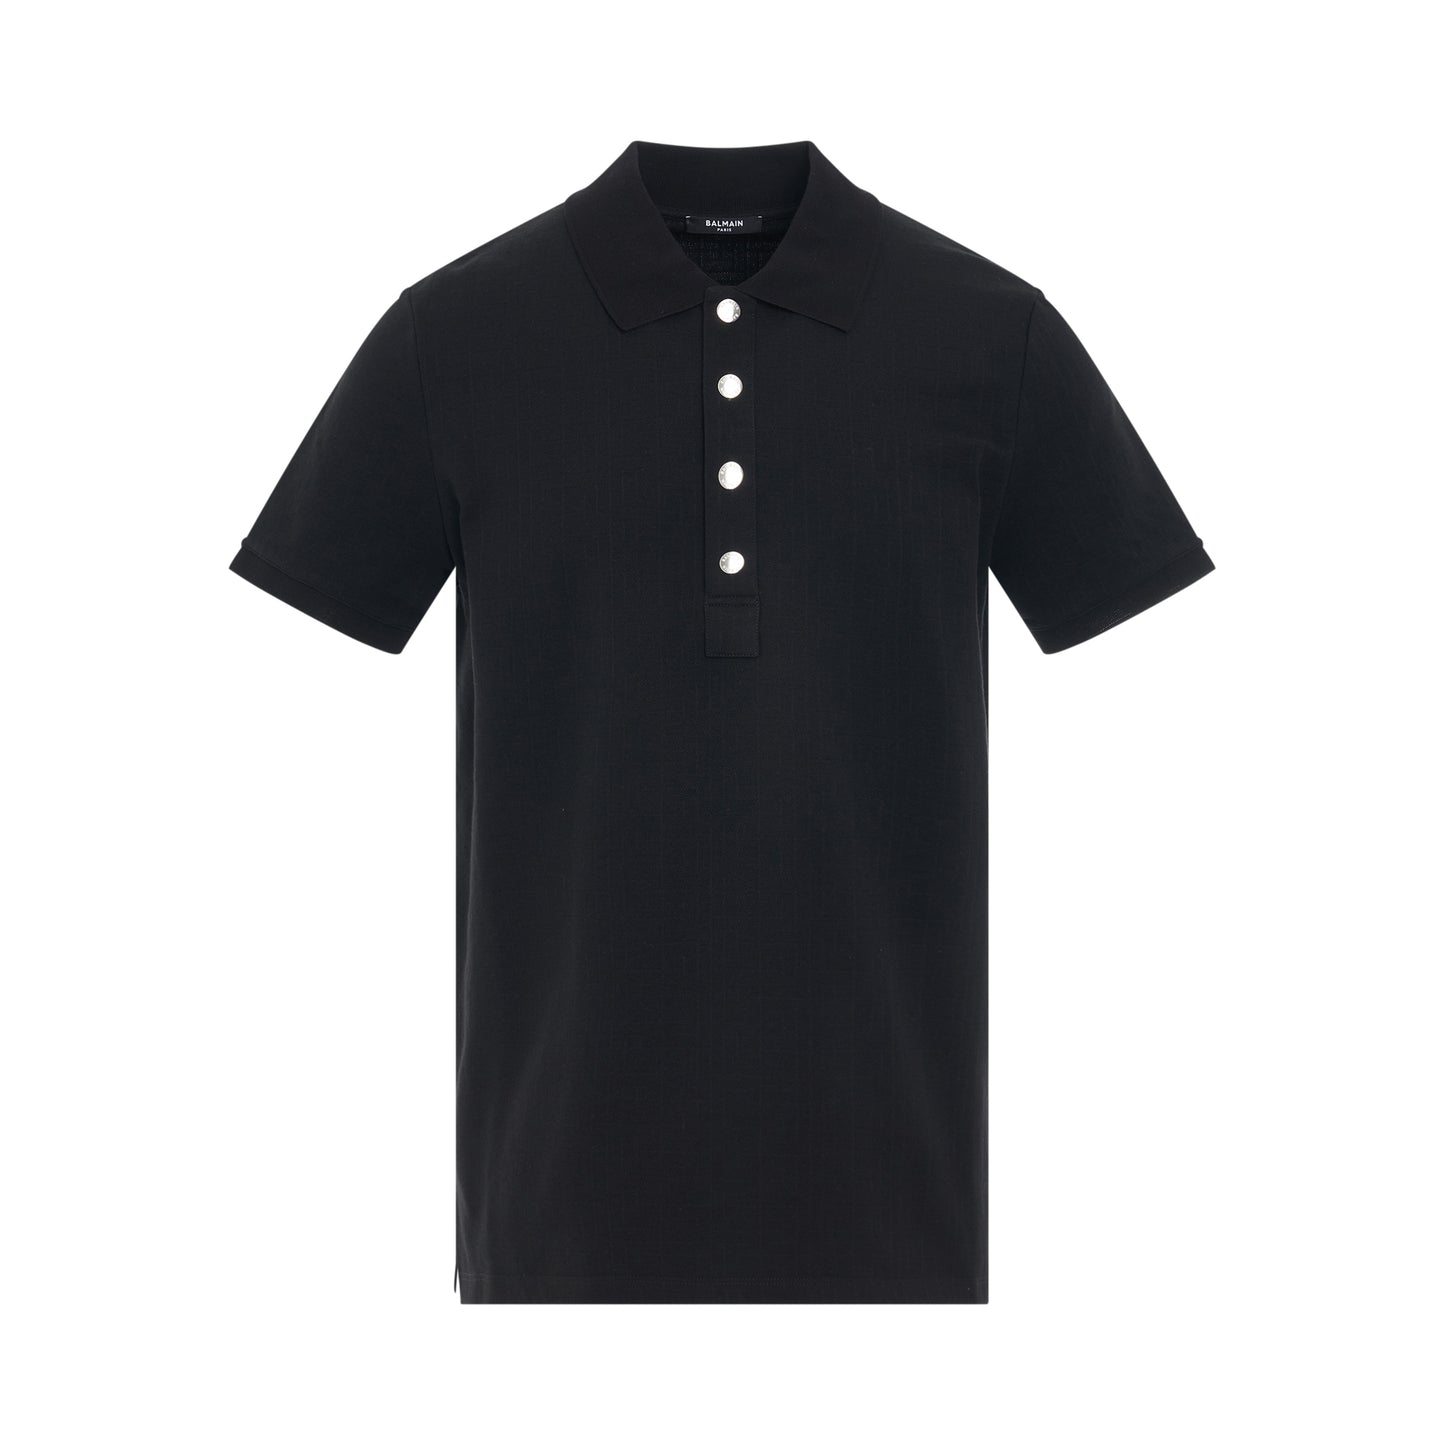 Monogram Cotton Pique Polo in Black